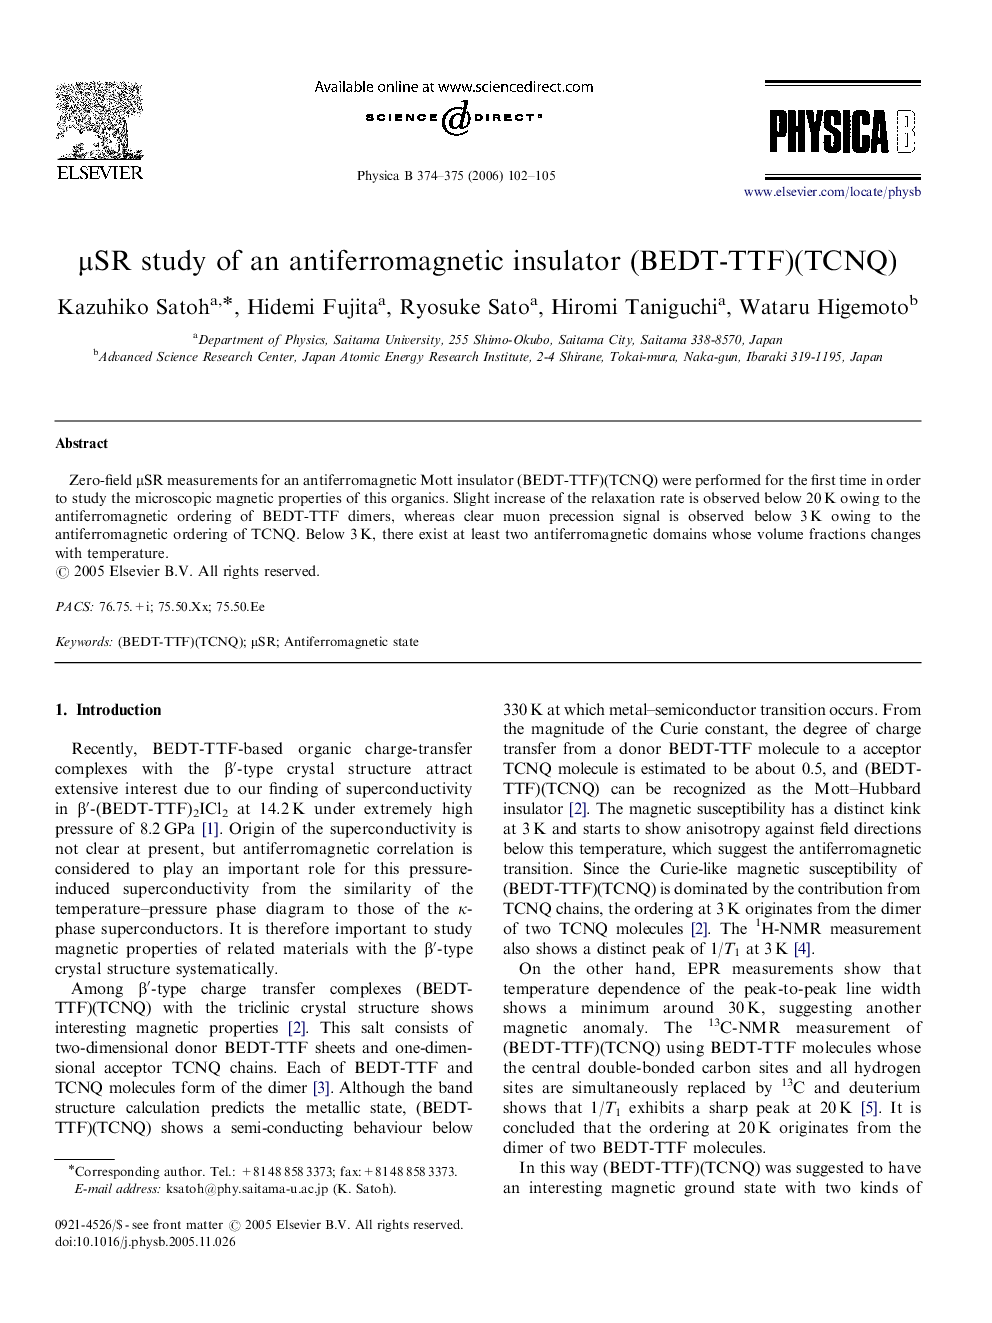 μSR study of an antiferromagnetic insulator (BEDT-TTF)(TCNQ)